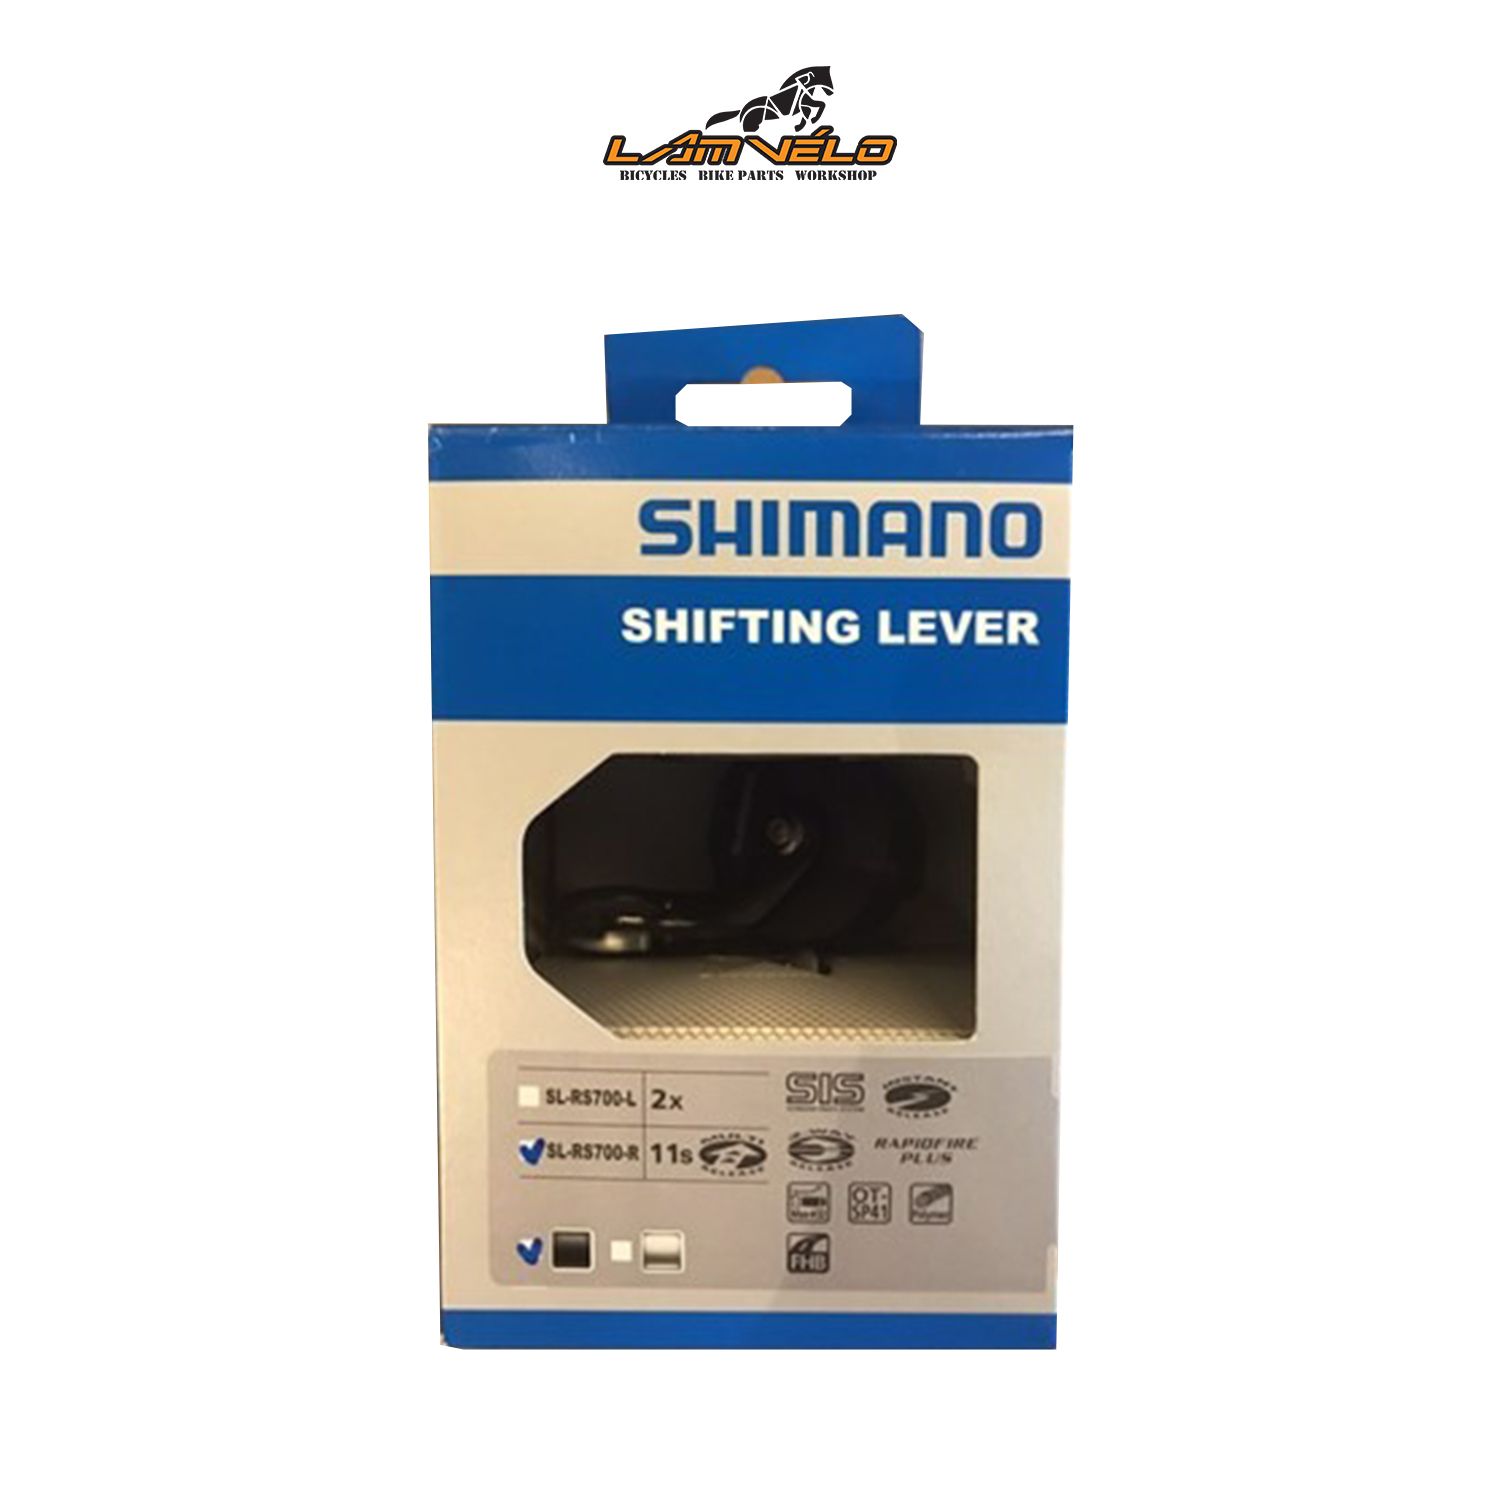  Tay bấm Shimano SL-RS700-R 11s 